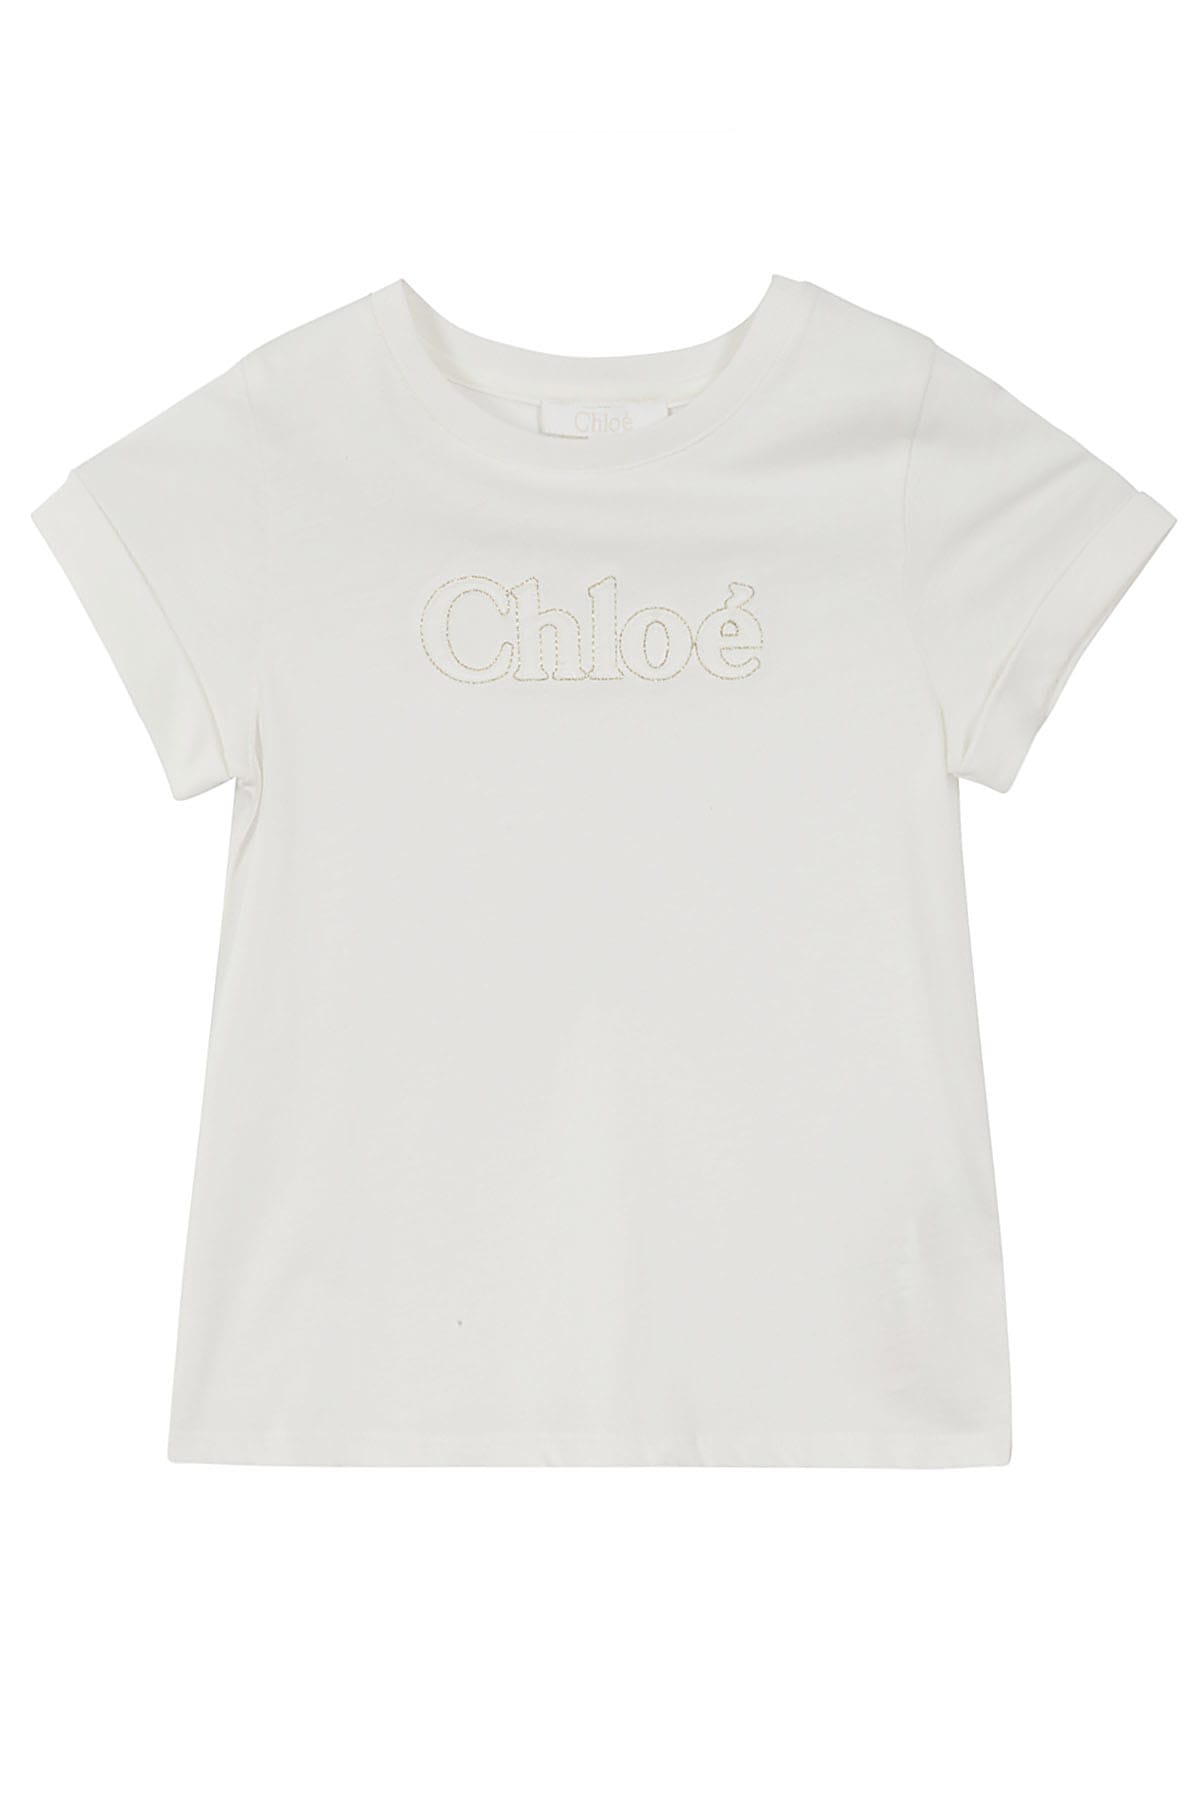 Shop Chloé Tee Shirt In Bianco Sporco